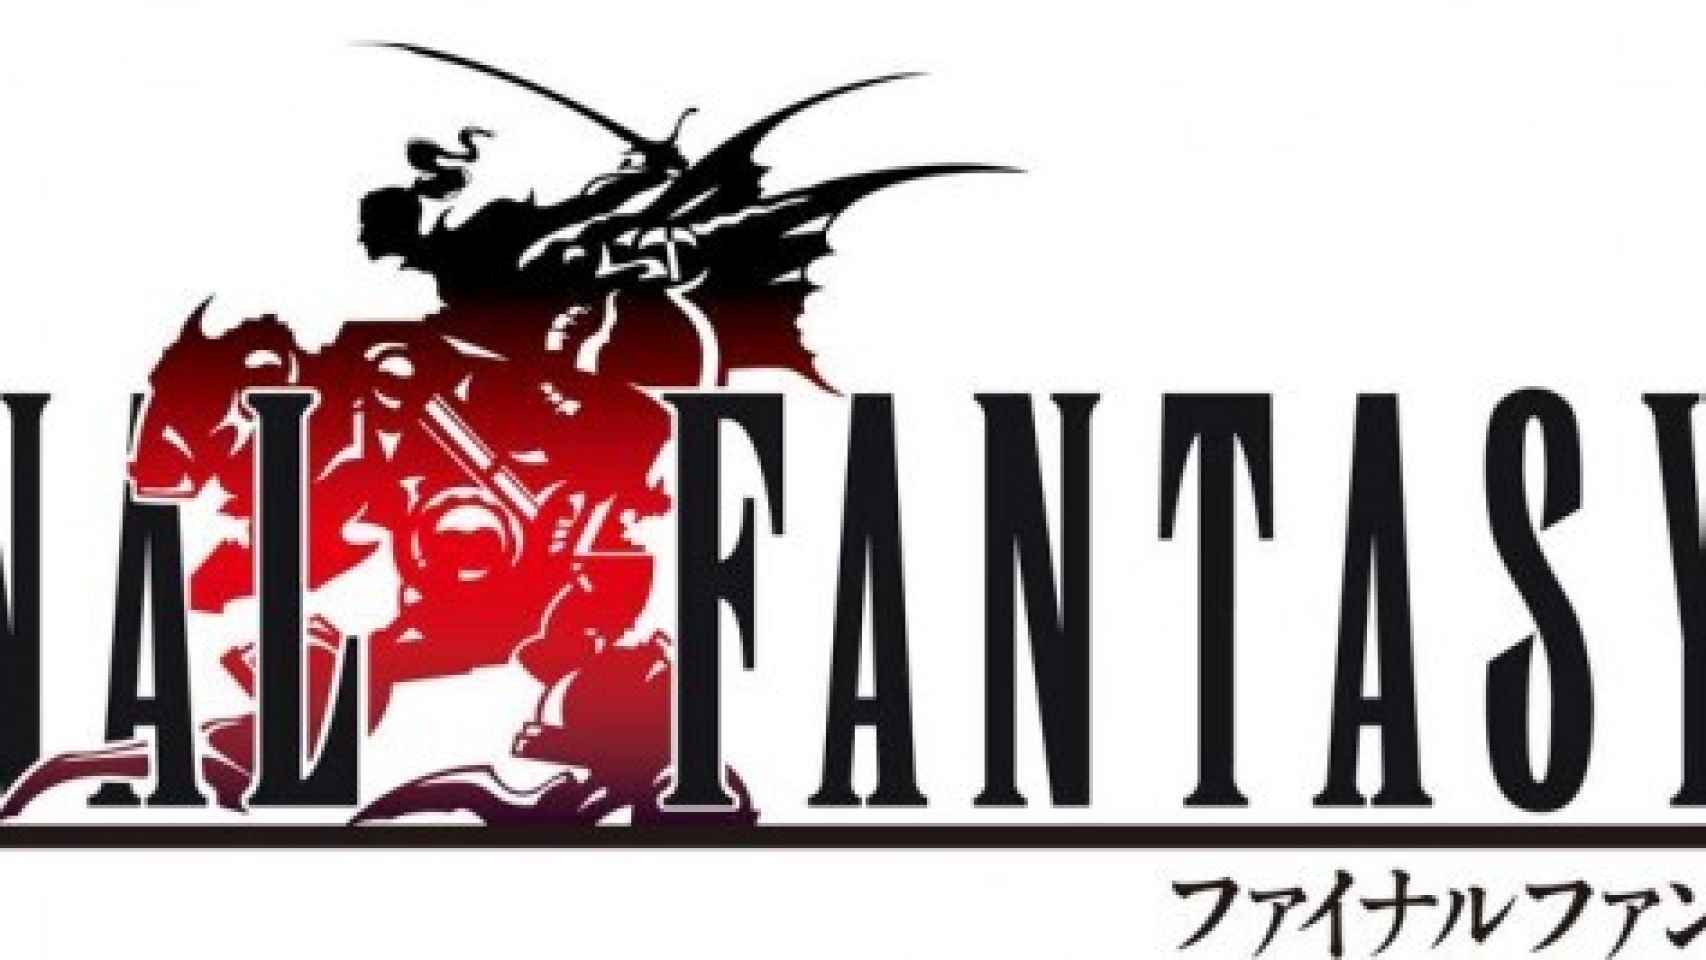 Final Fantasy VI, uno de los mejores juegos de rol de la Historia llega a Android